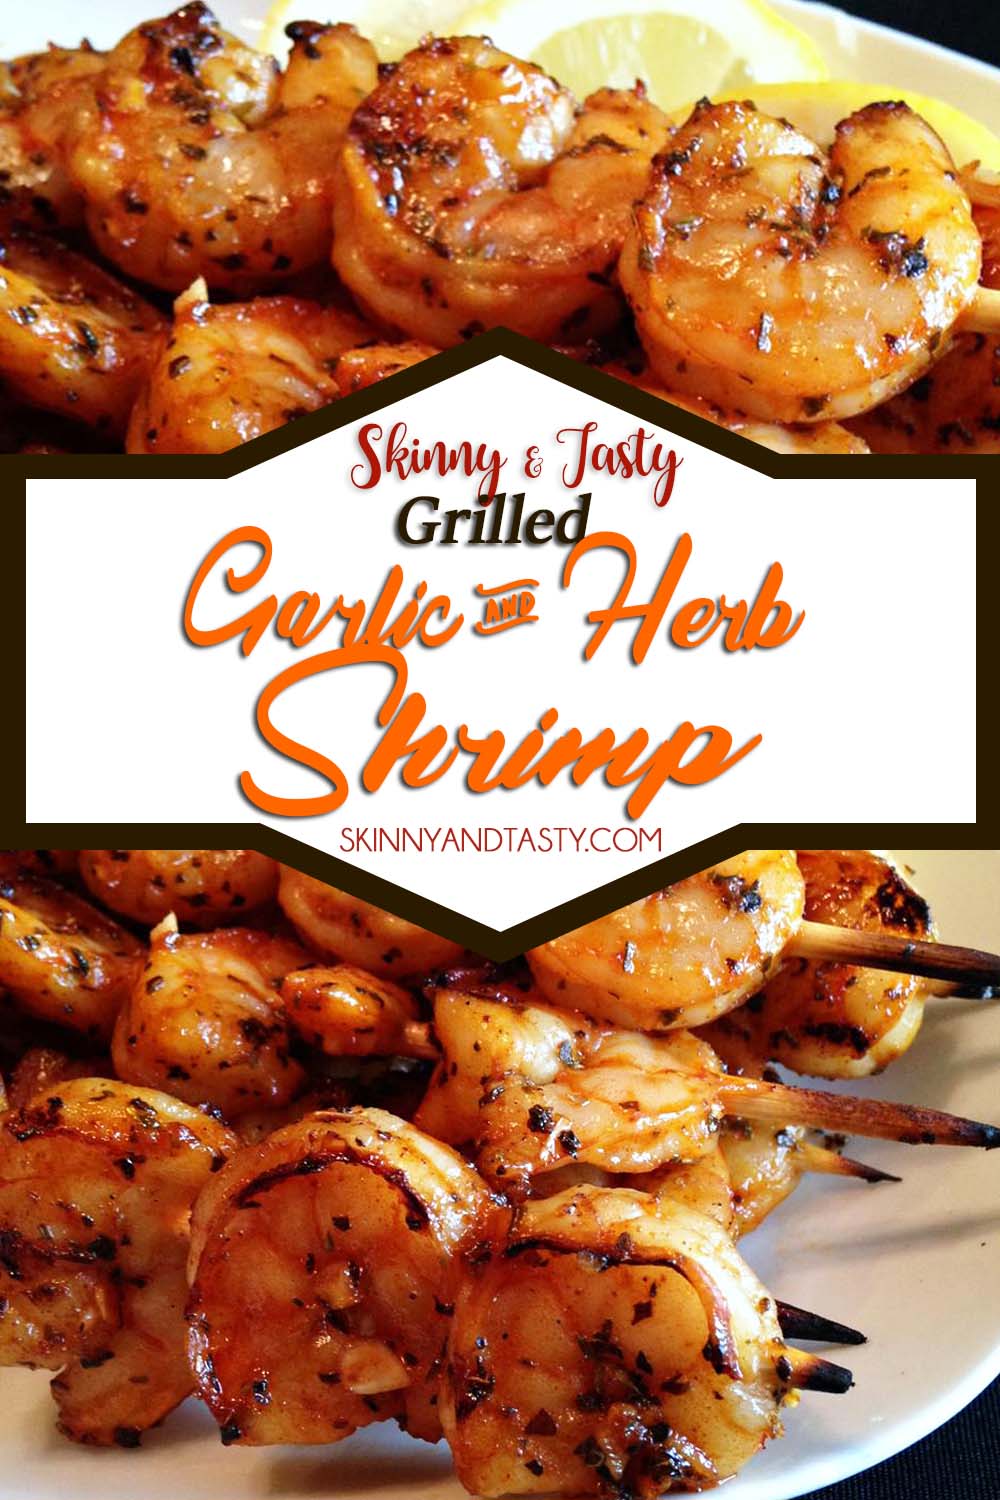 Garlic and Herb Shrimp Recipe